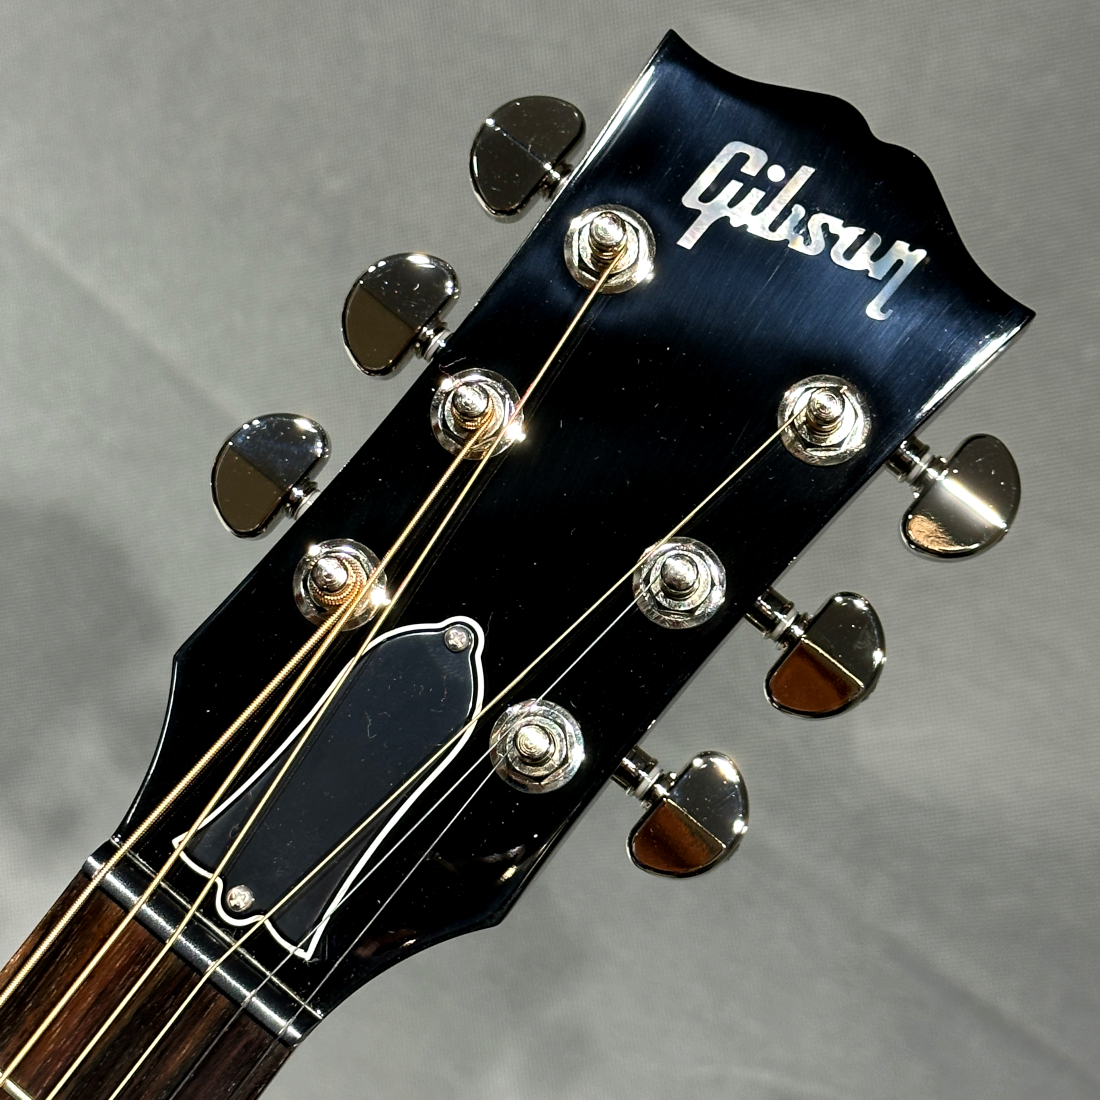 Yahoo!オークション - Gibson J-45 Standard Red Spru...